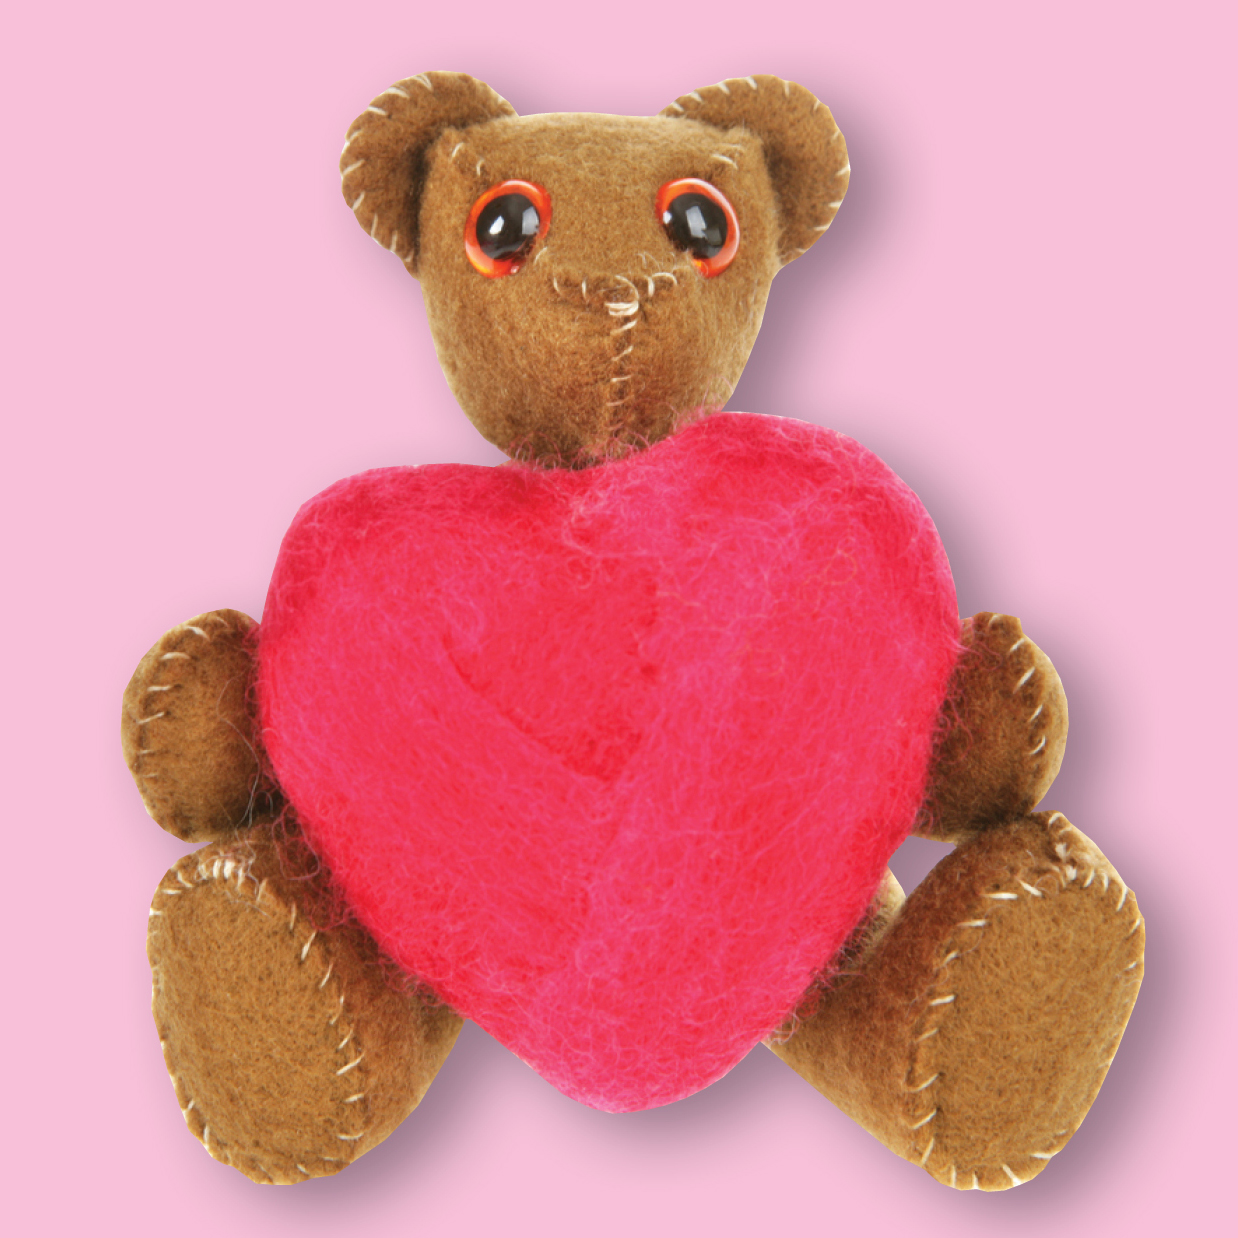 Teddy bear holding a heart